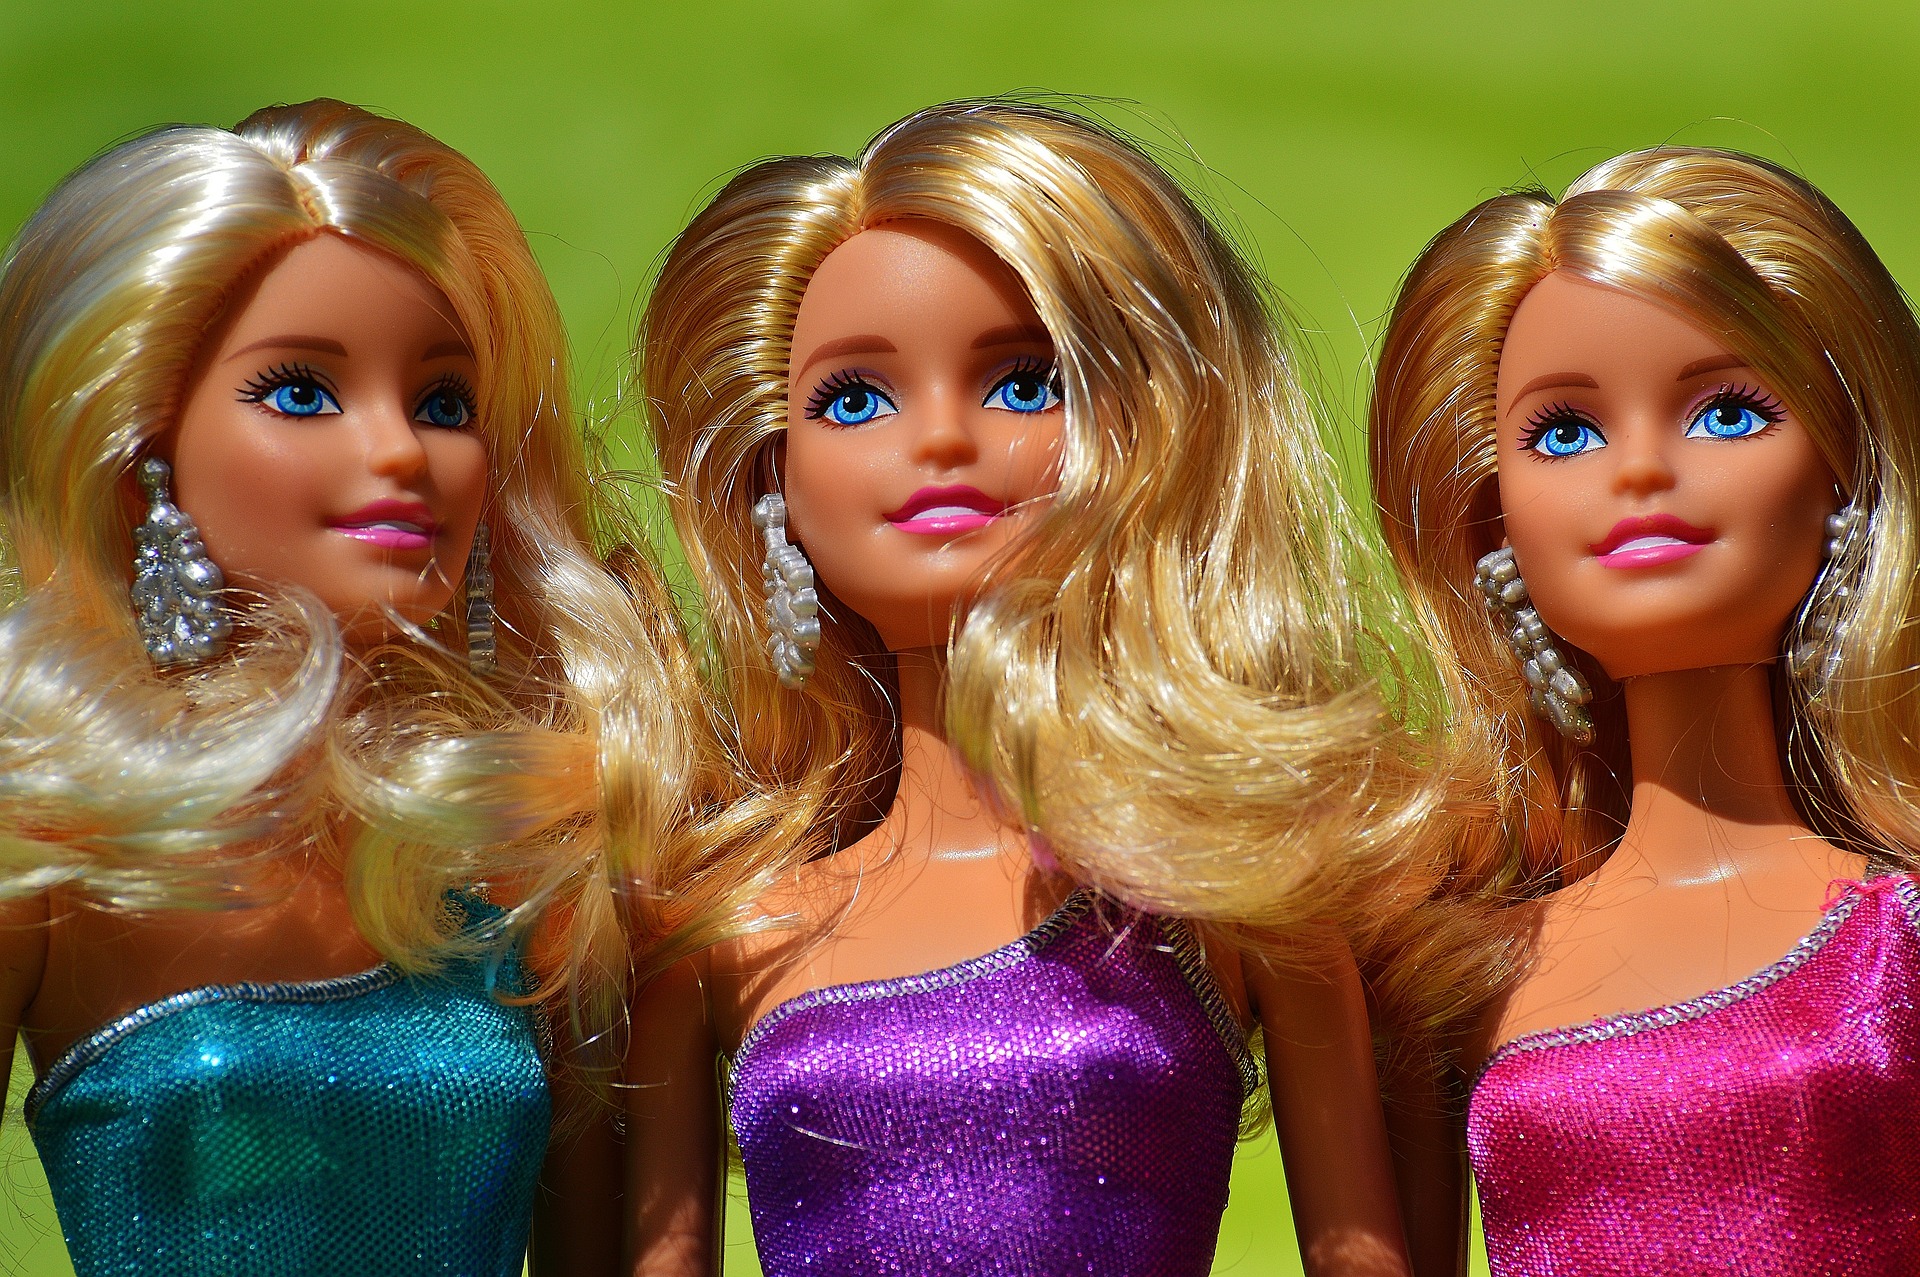 Mattel musste sich oft und immer wieder den Vorwürfen stellen, mit seinen Puppen Klischees zu bedienen und ein falsches Frauenbild zu fördern. Bild: Alexa auf Pixabay.de